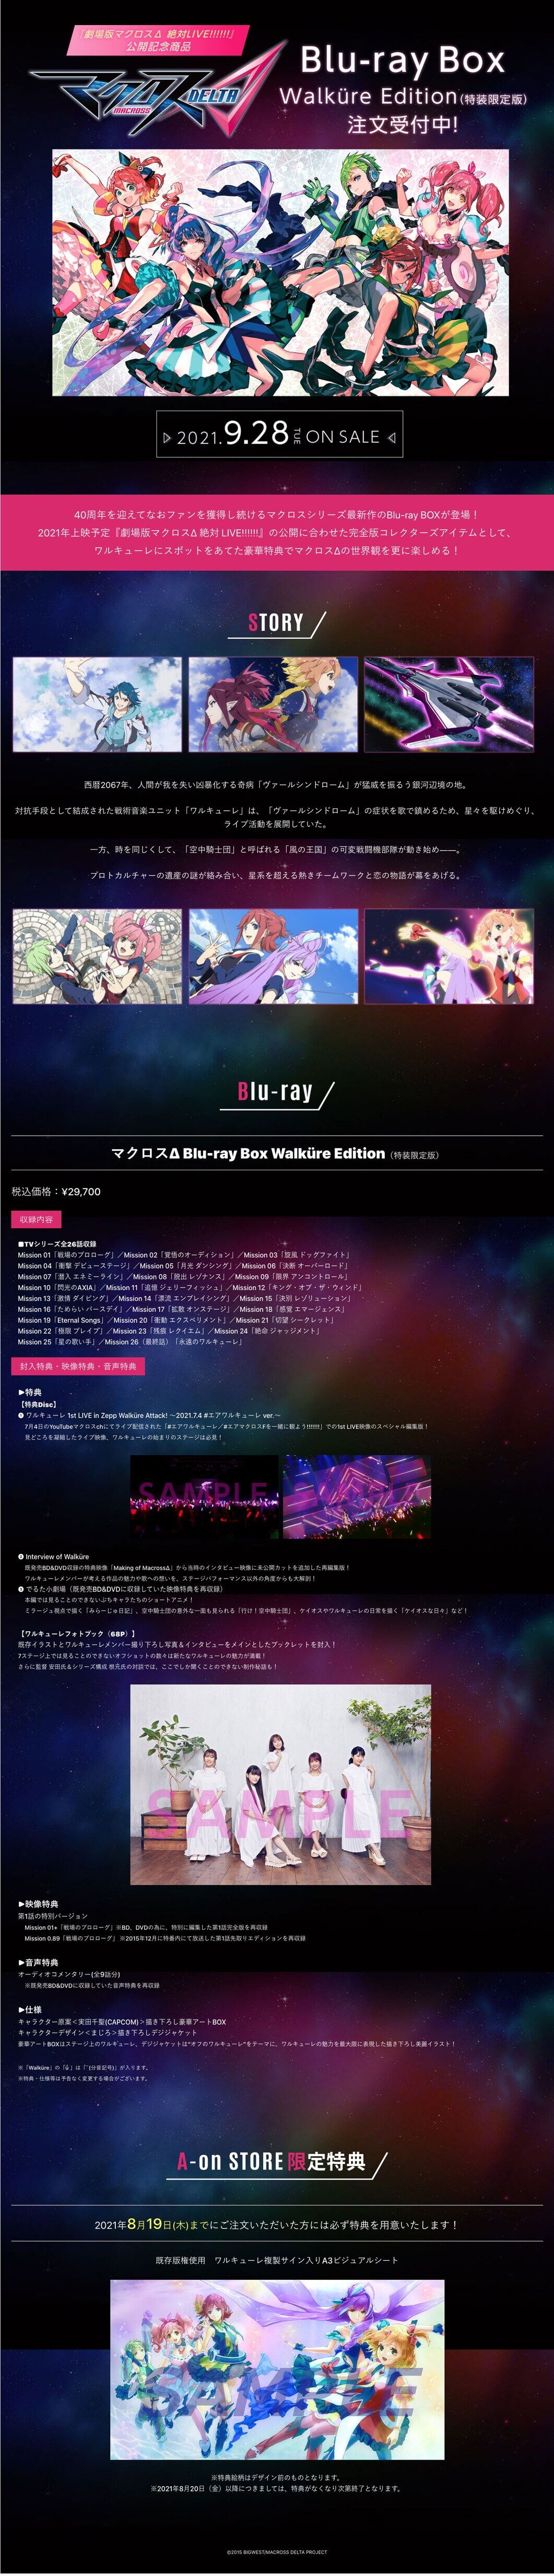 マクロスΔ Blu-ray Box Walkure Edition 【A-on STORE オリジナル特典